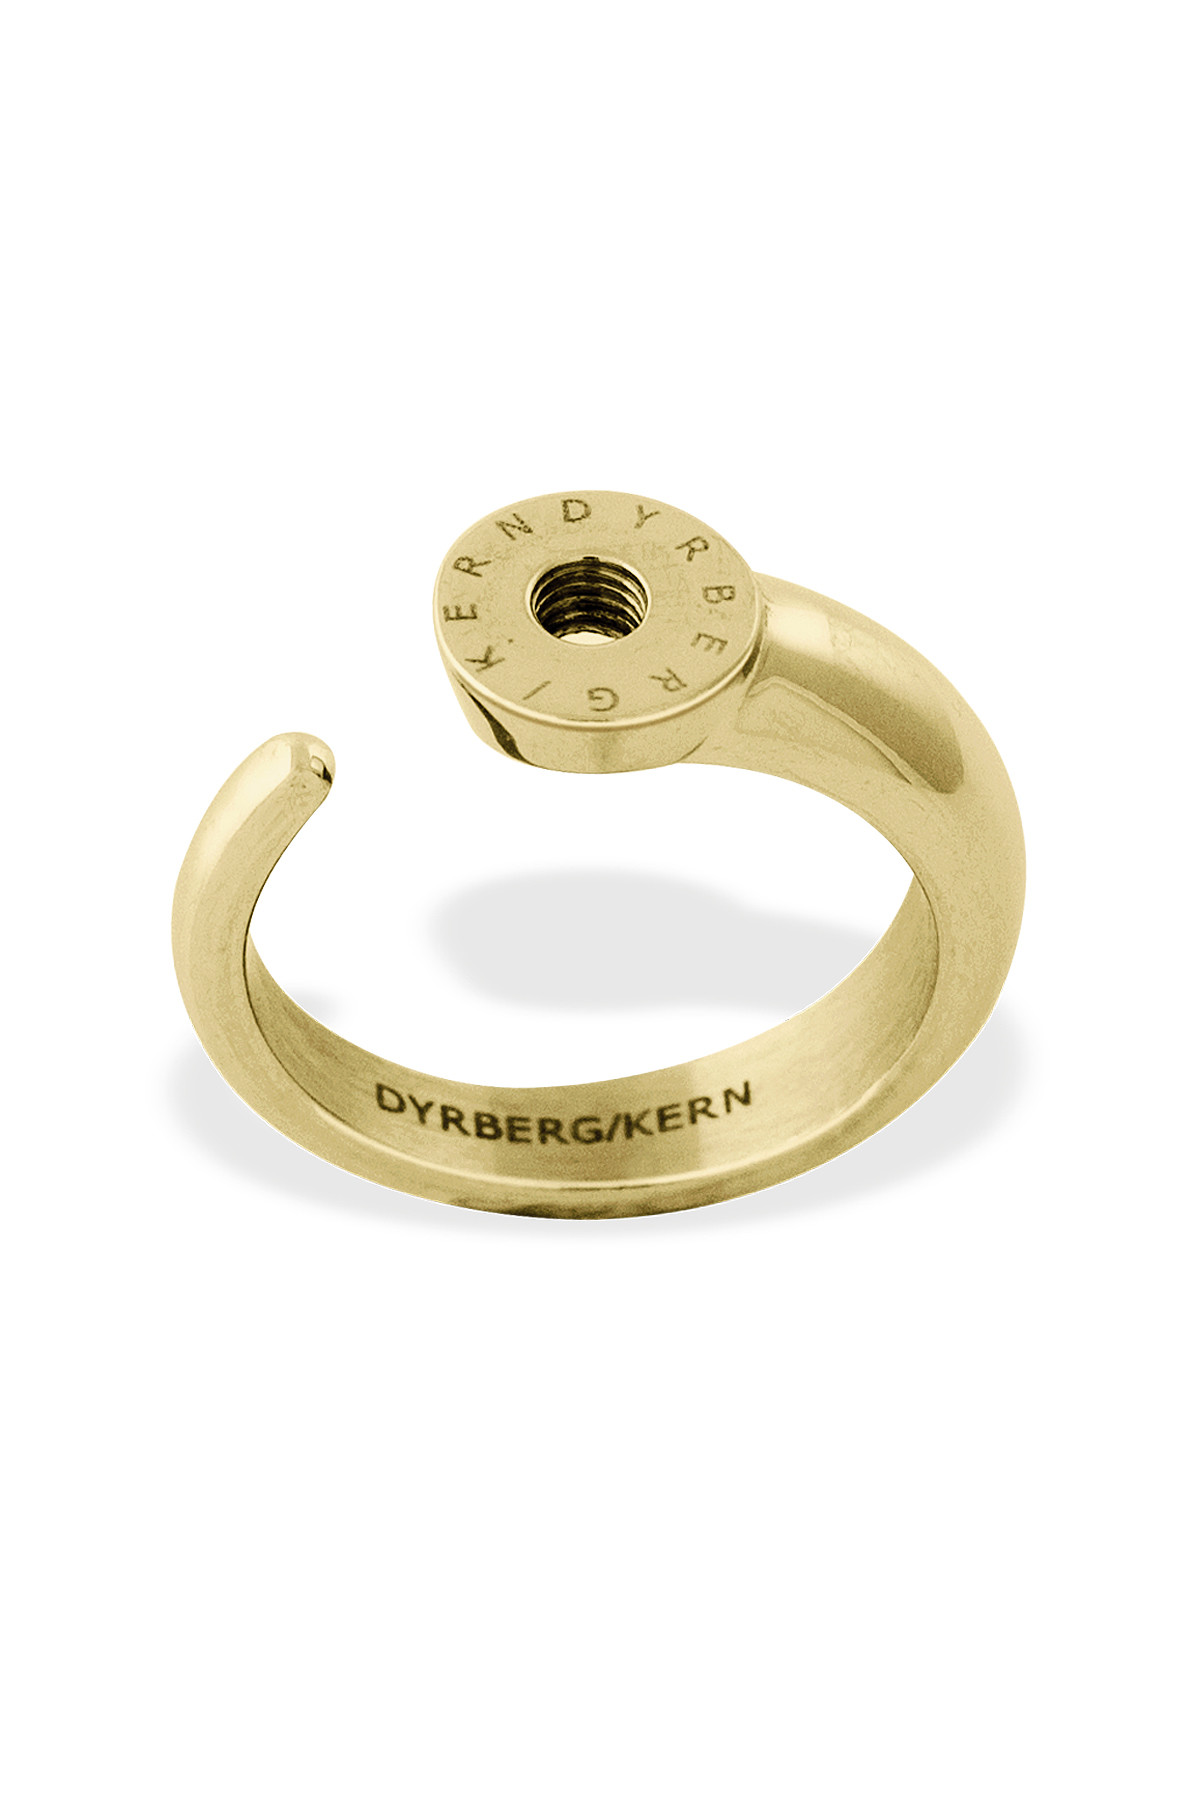 Dyrberg/kern Ring Ring, Farve: Guld, Størrelse: I/51, Dame